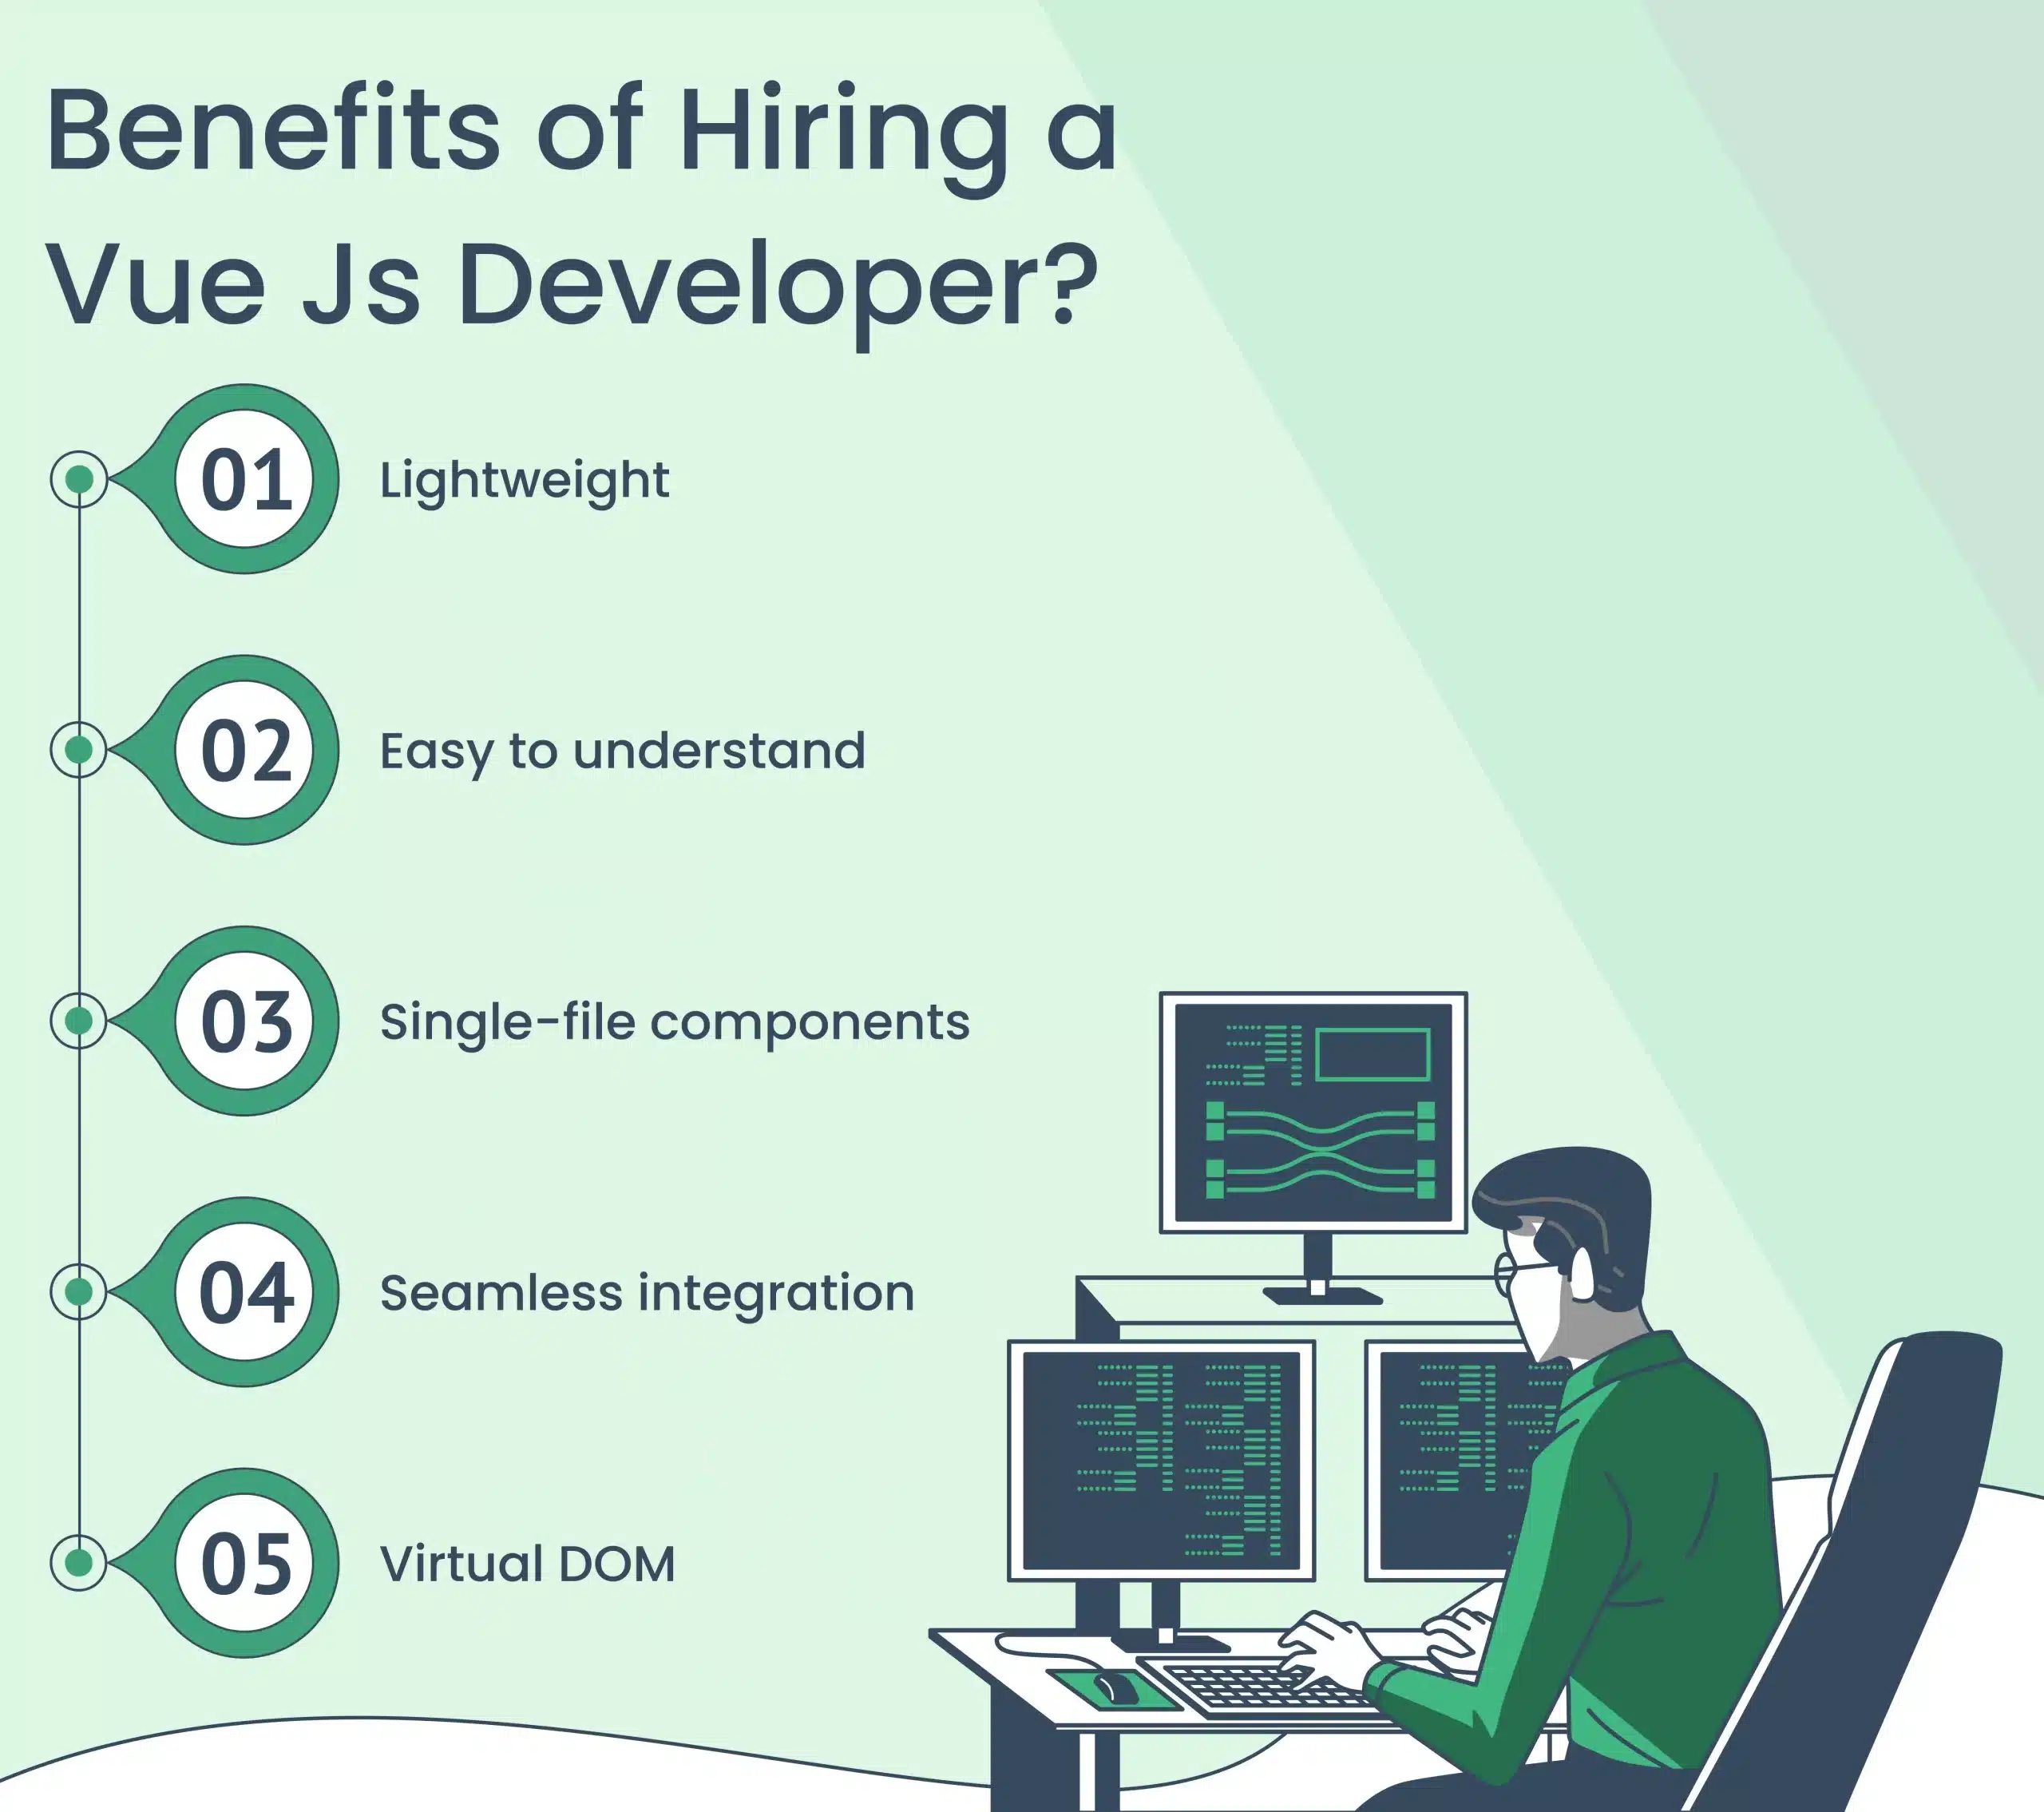 Benefits of hiring a VueJS developer